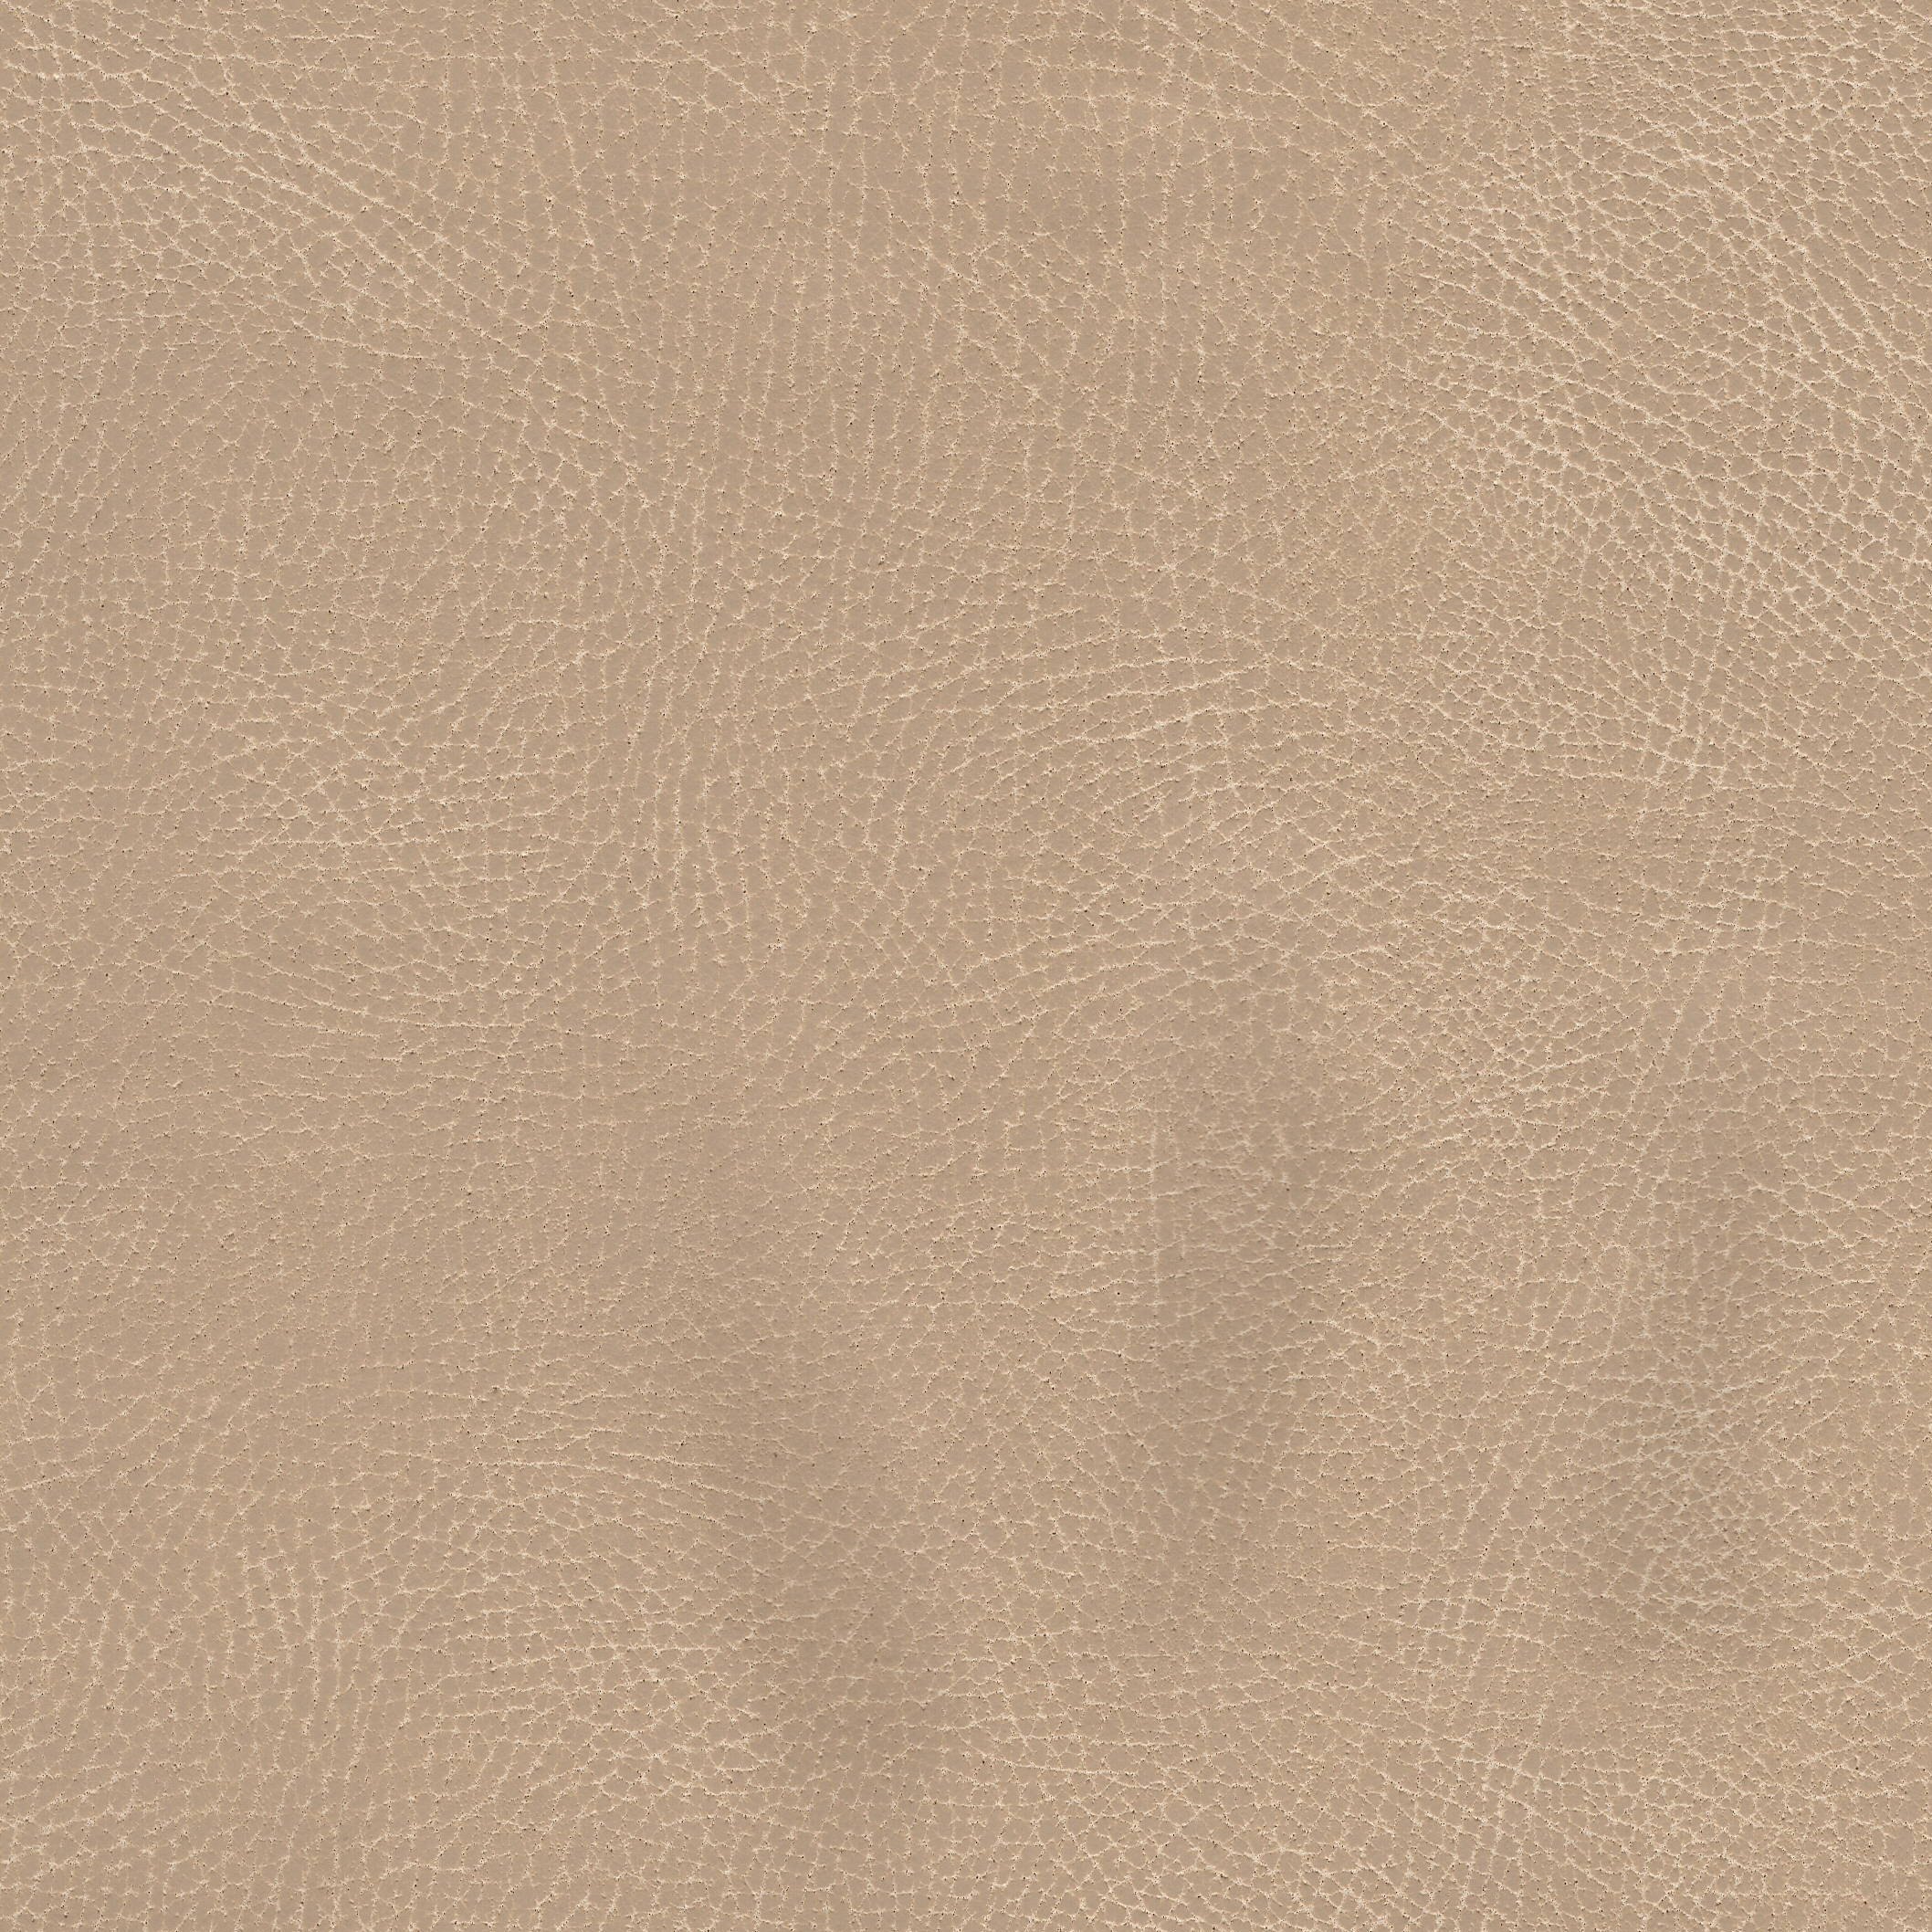 Brisa - 3340 Desert Tan (Copy)